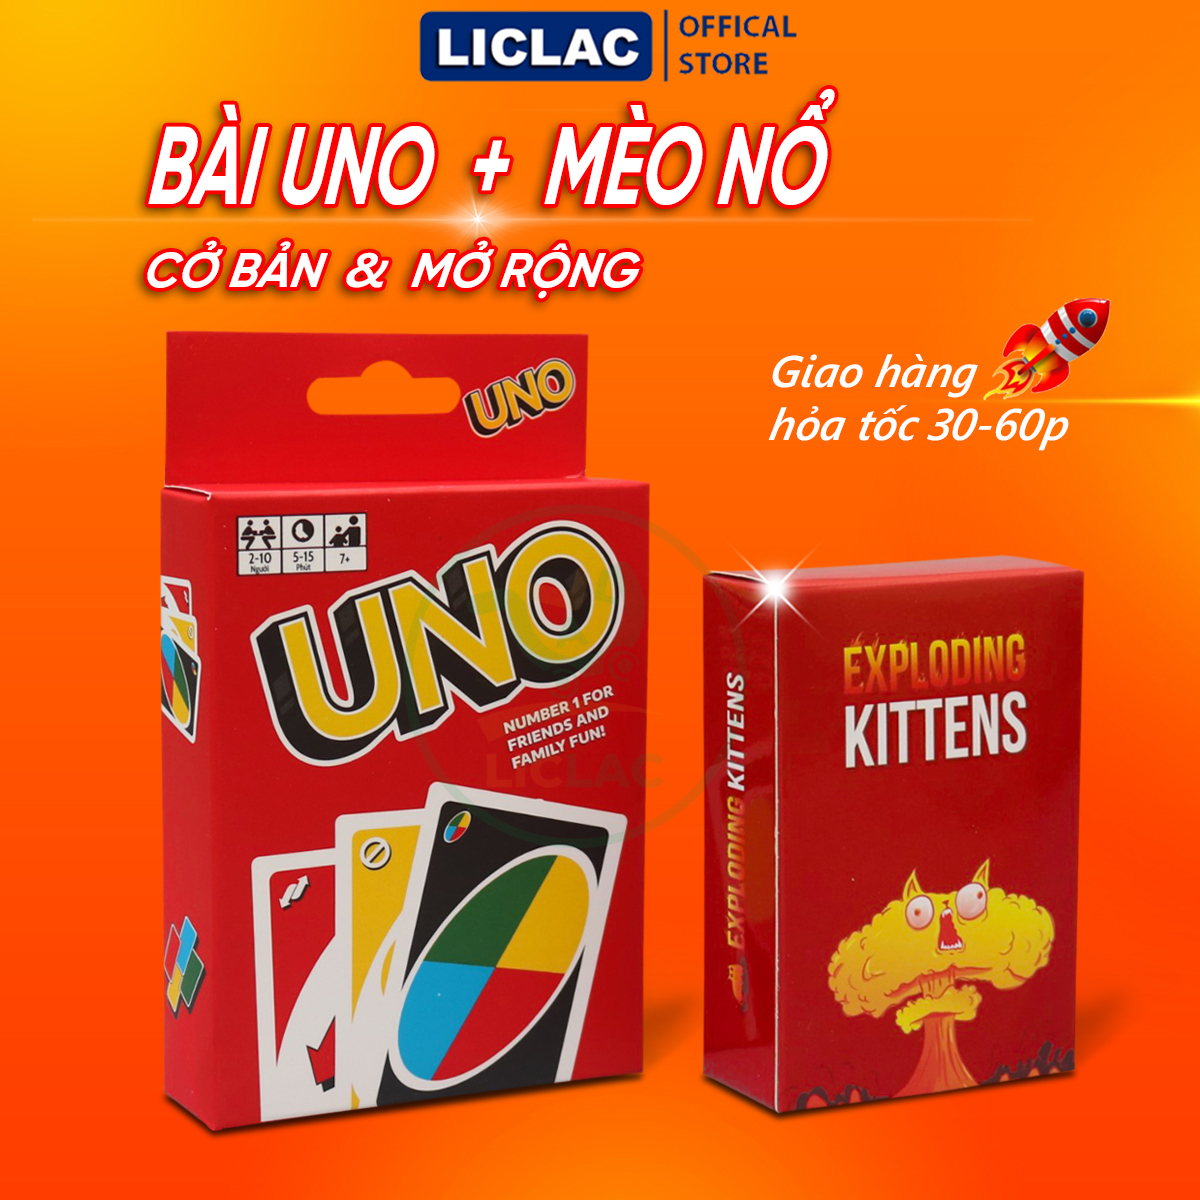 Combo Bài Uno + Mèo Nổ Việt Hóa - Board Game Cơ Bản và Mở Rộng hấp dẫn